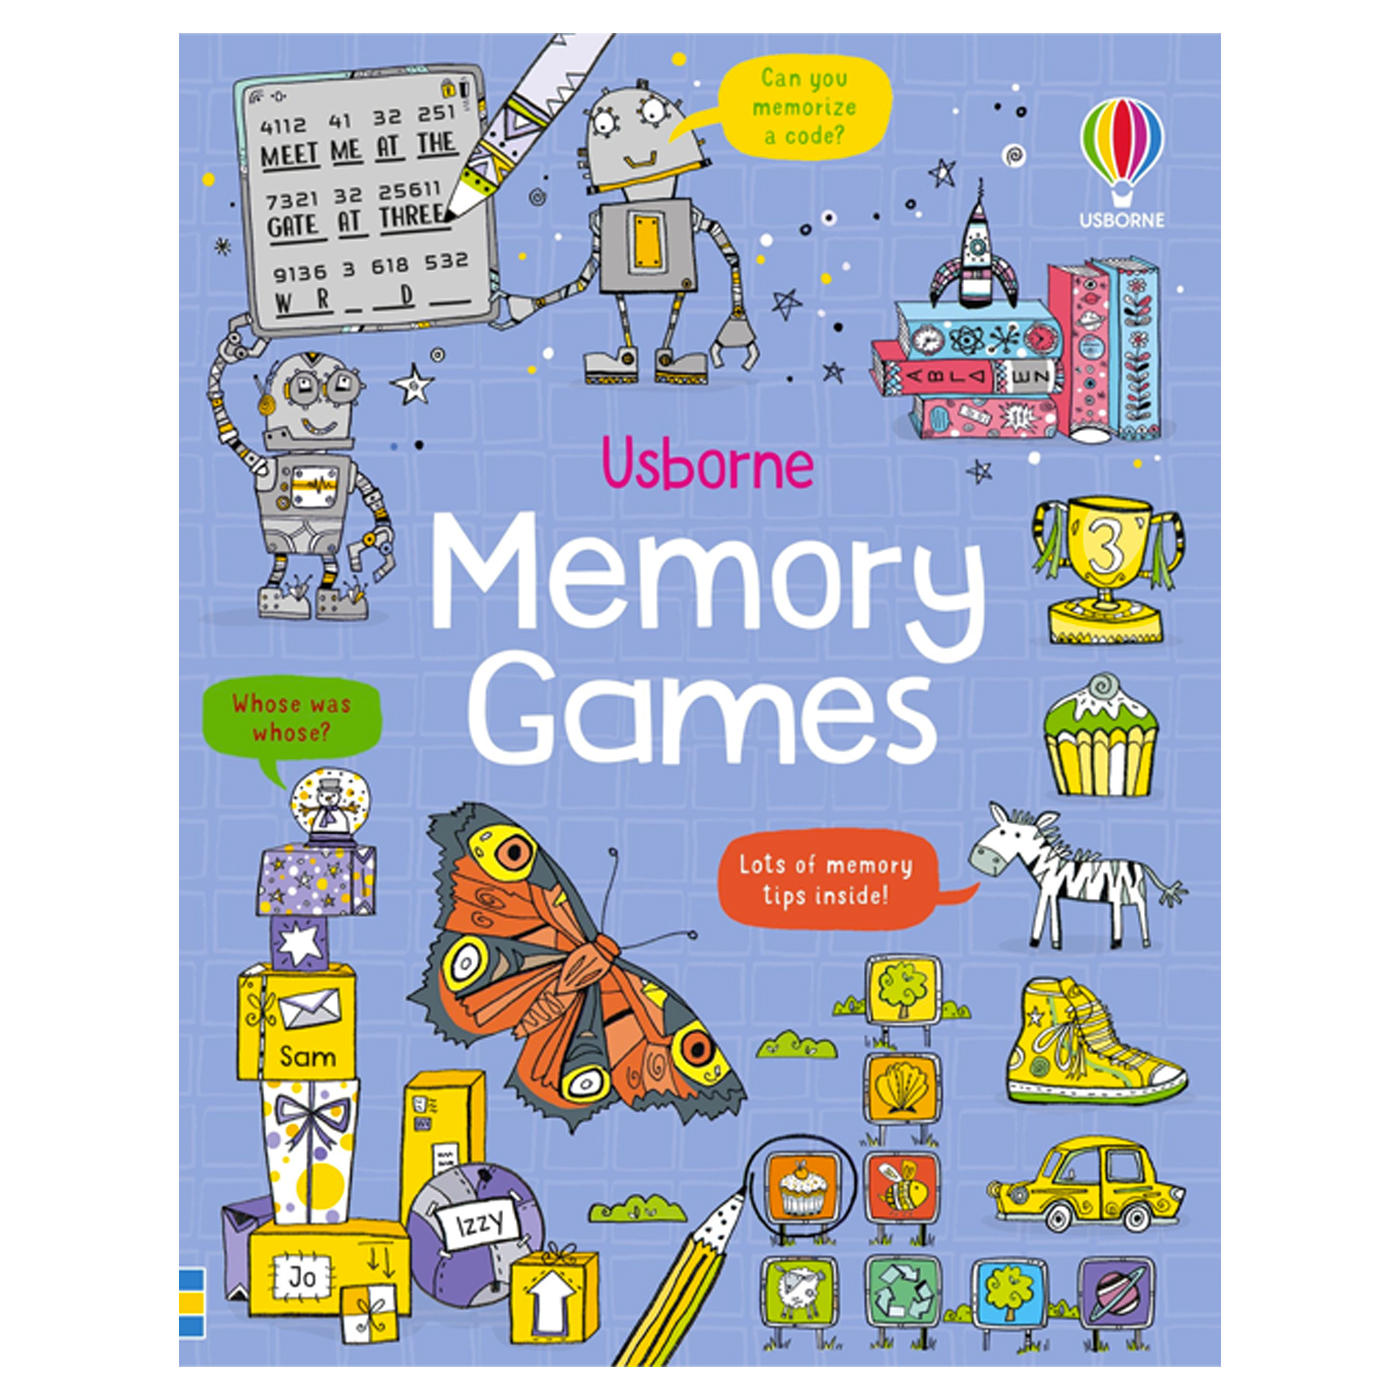  Memory Games